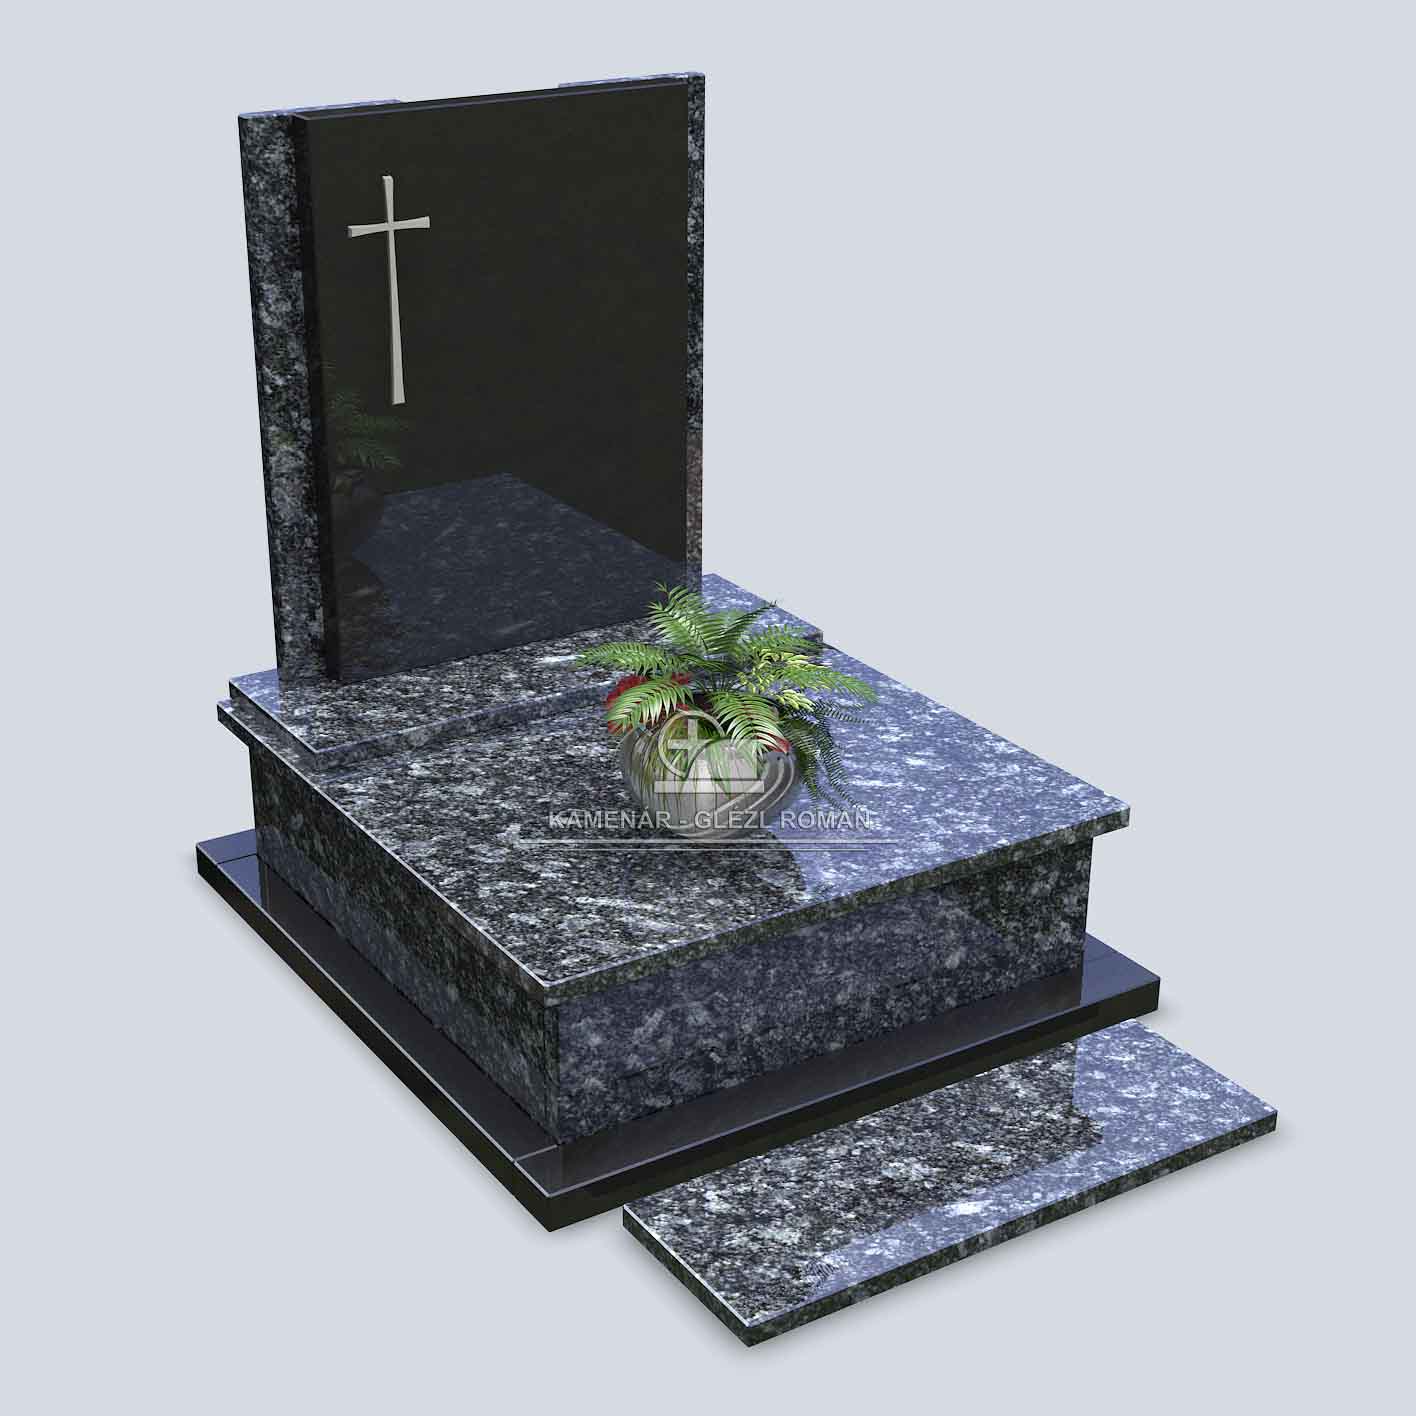 Urnový pomník zo žuly v sivočiernom prevedení s montovaným krížom zo striebra a s misou s kvetmi